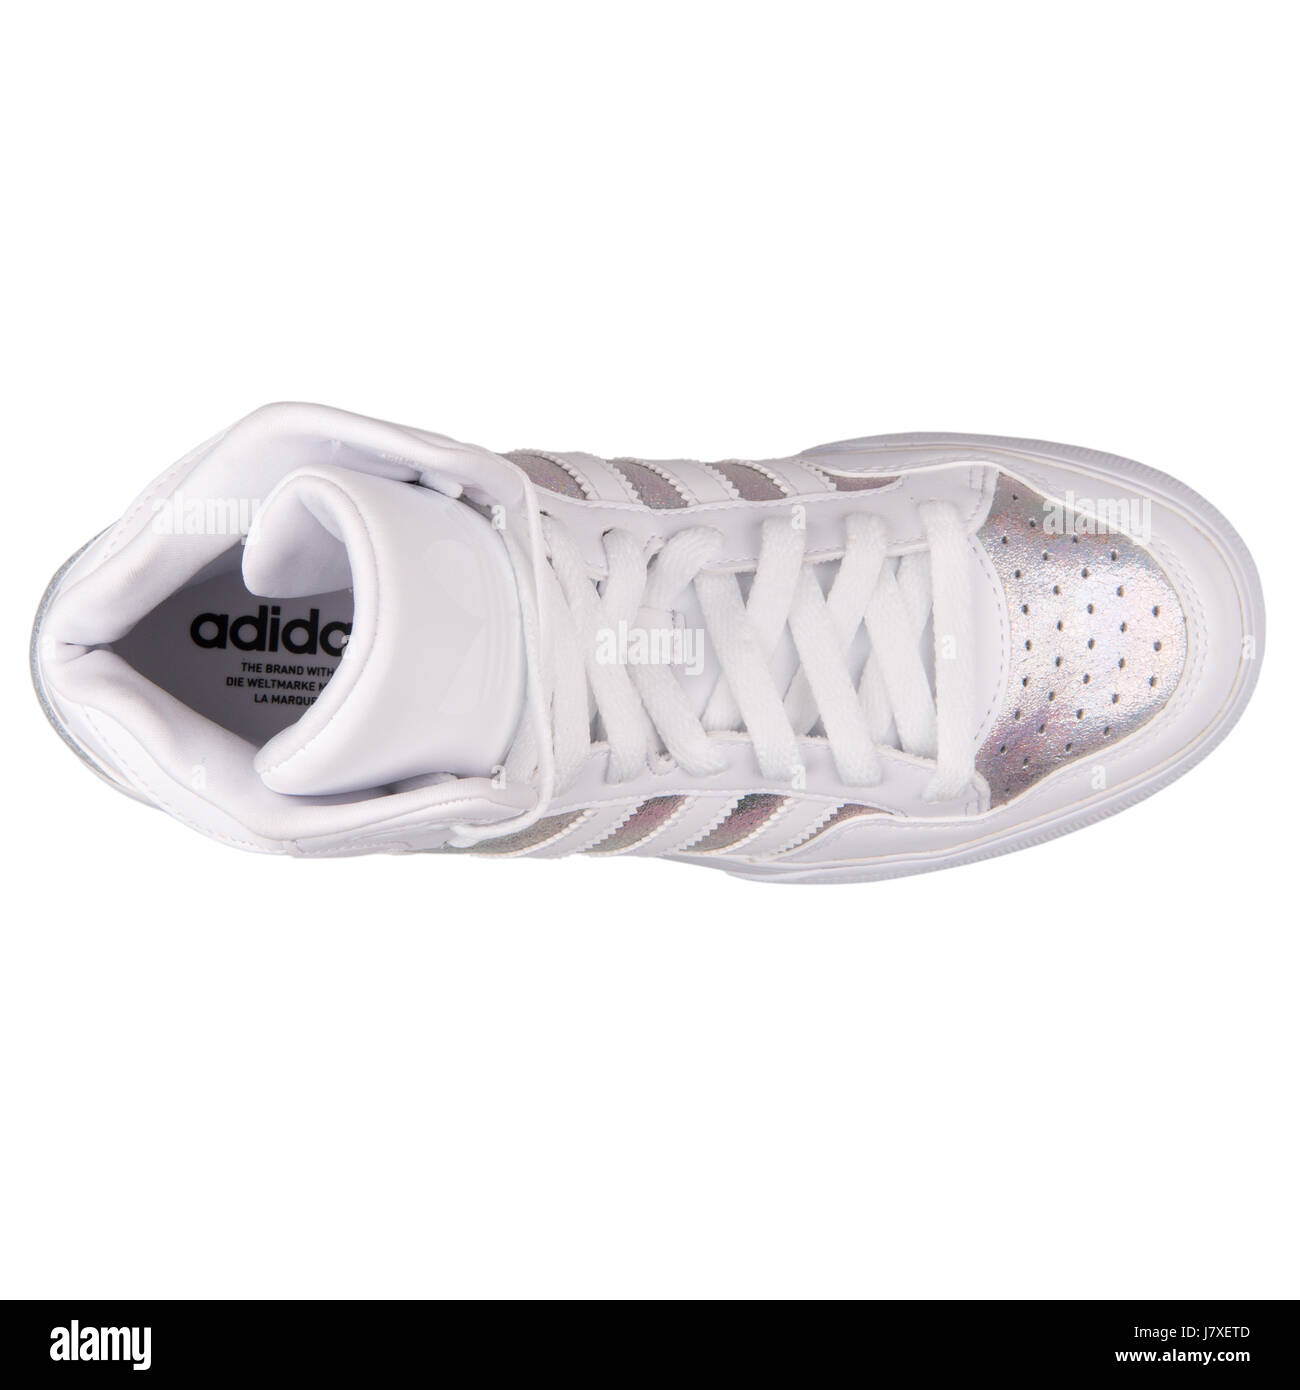 encima Excremento portón Adidas Extaball W Mujer Blanco iridiscente con cuero metalizado plata  Sneakers - S77398 Fotografía de stock - Alamy